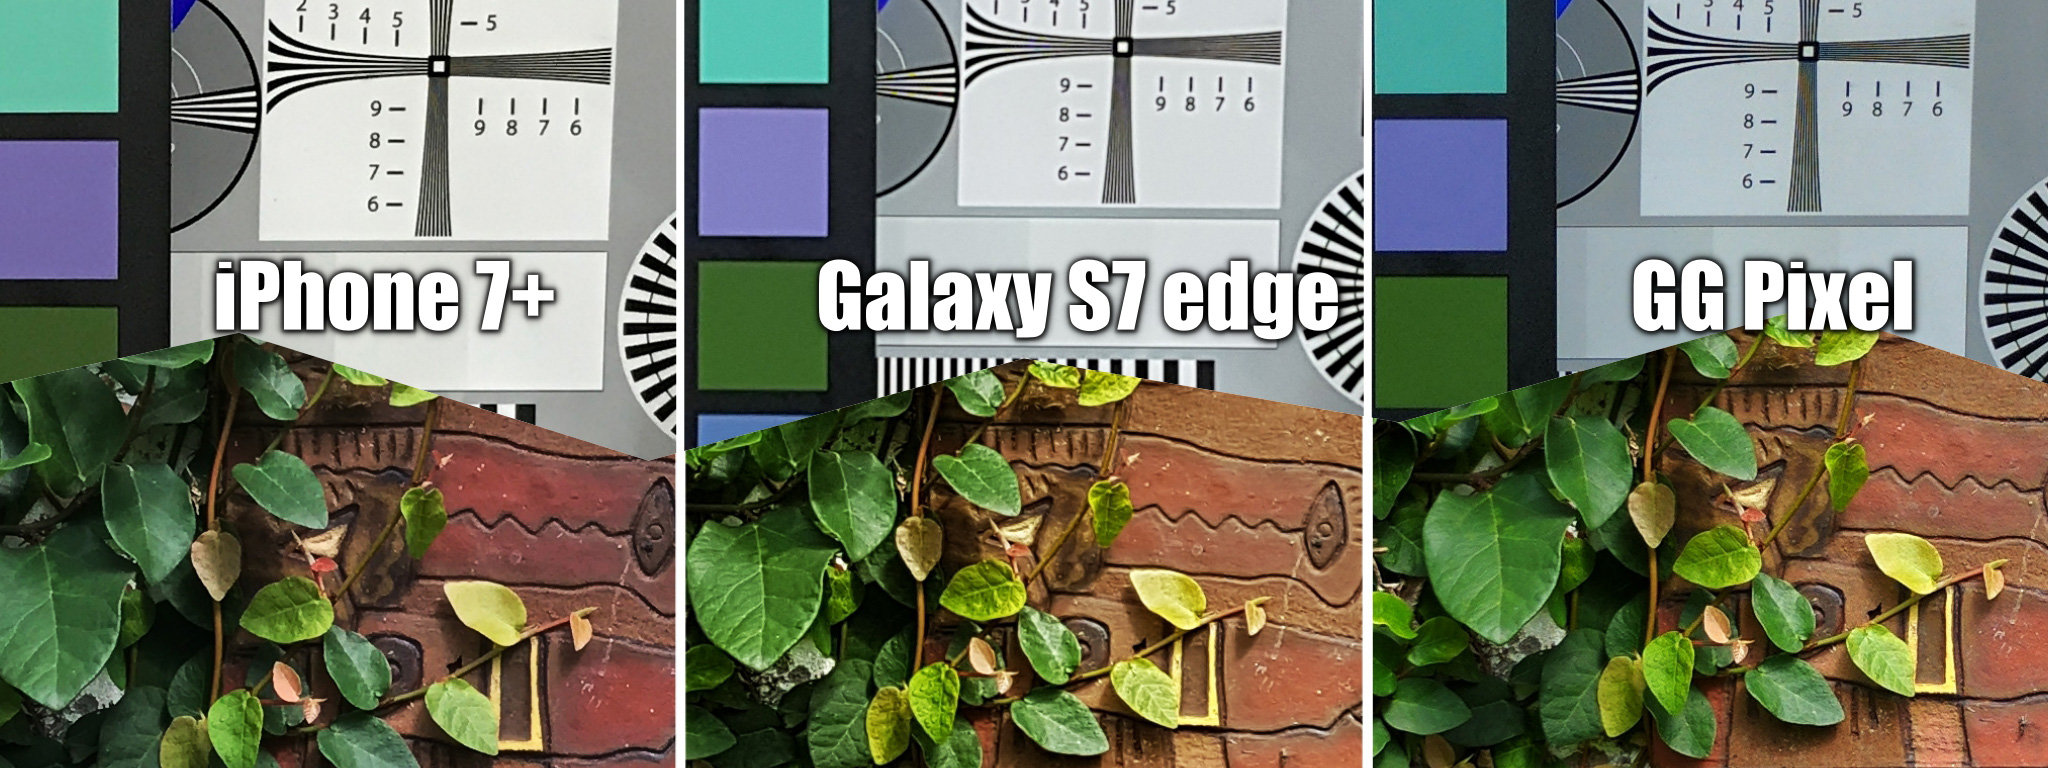 So sánh Camera GG Pixel - Galaxy S7e - iPhone 7 Plus: Tổng thể thì GG Pixel chưa hẳn là tốt nhất